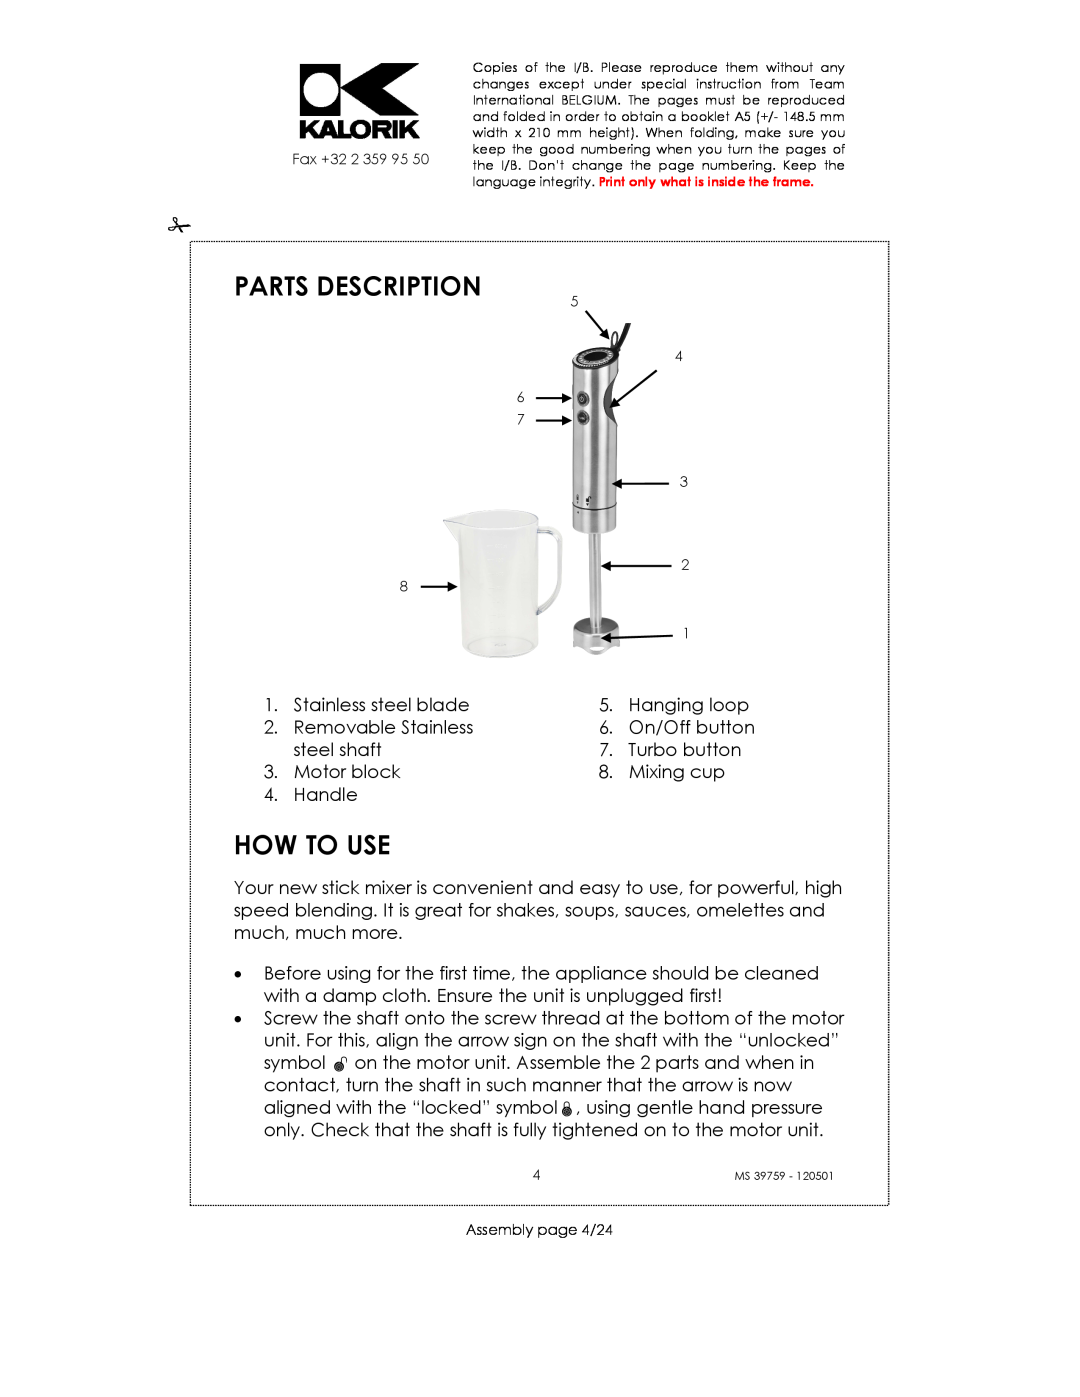 Kalorik uskms39759 manual How To Use, Parts Description 